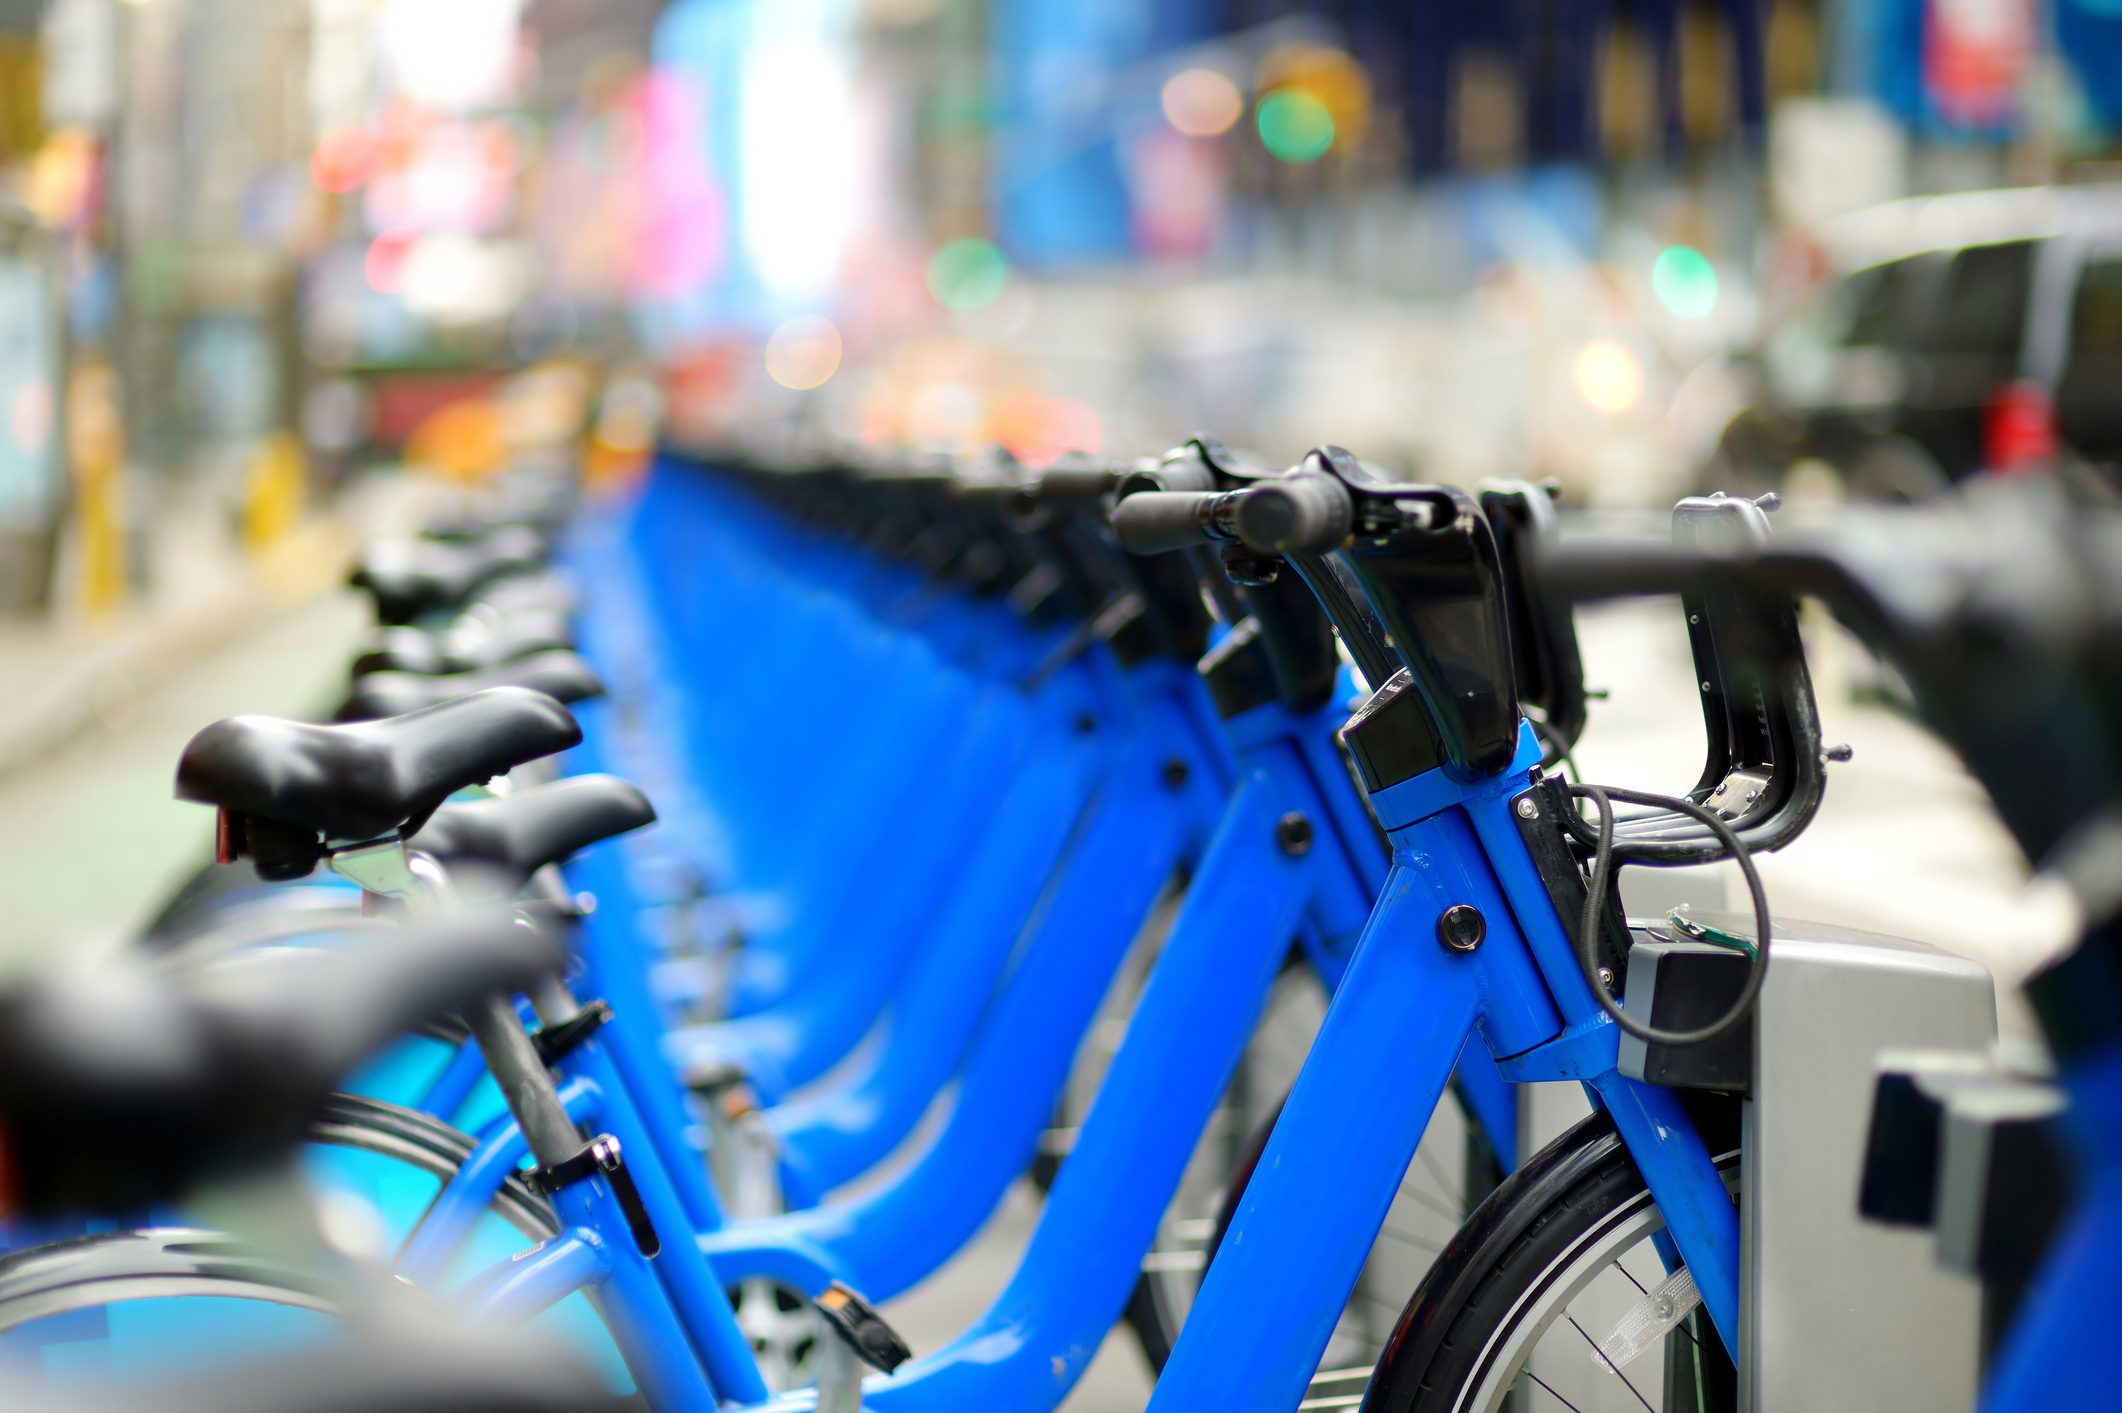 blue bike-share bikes in their rack